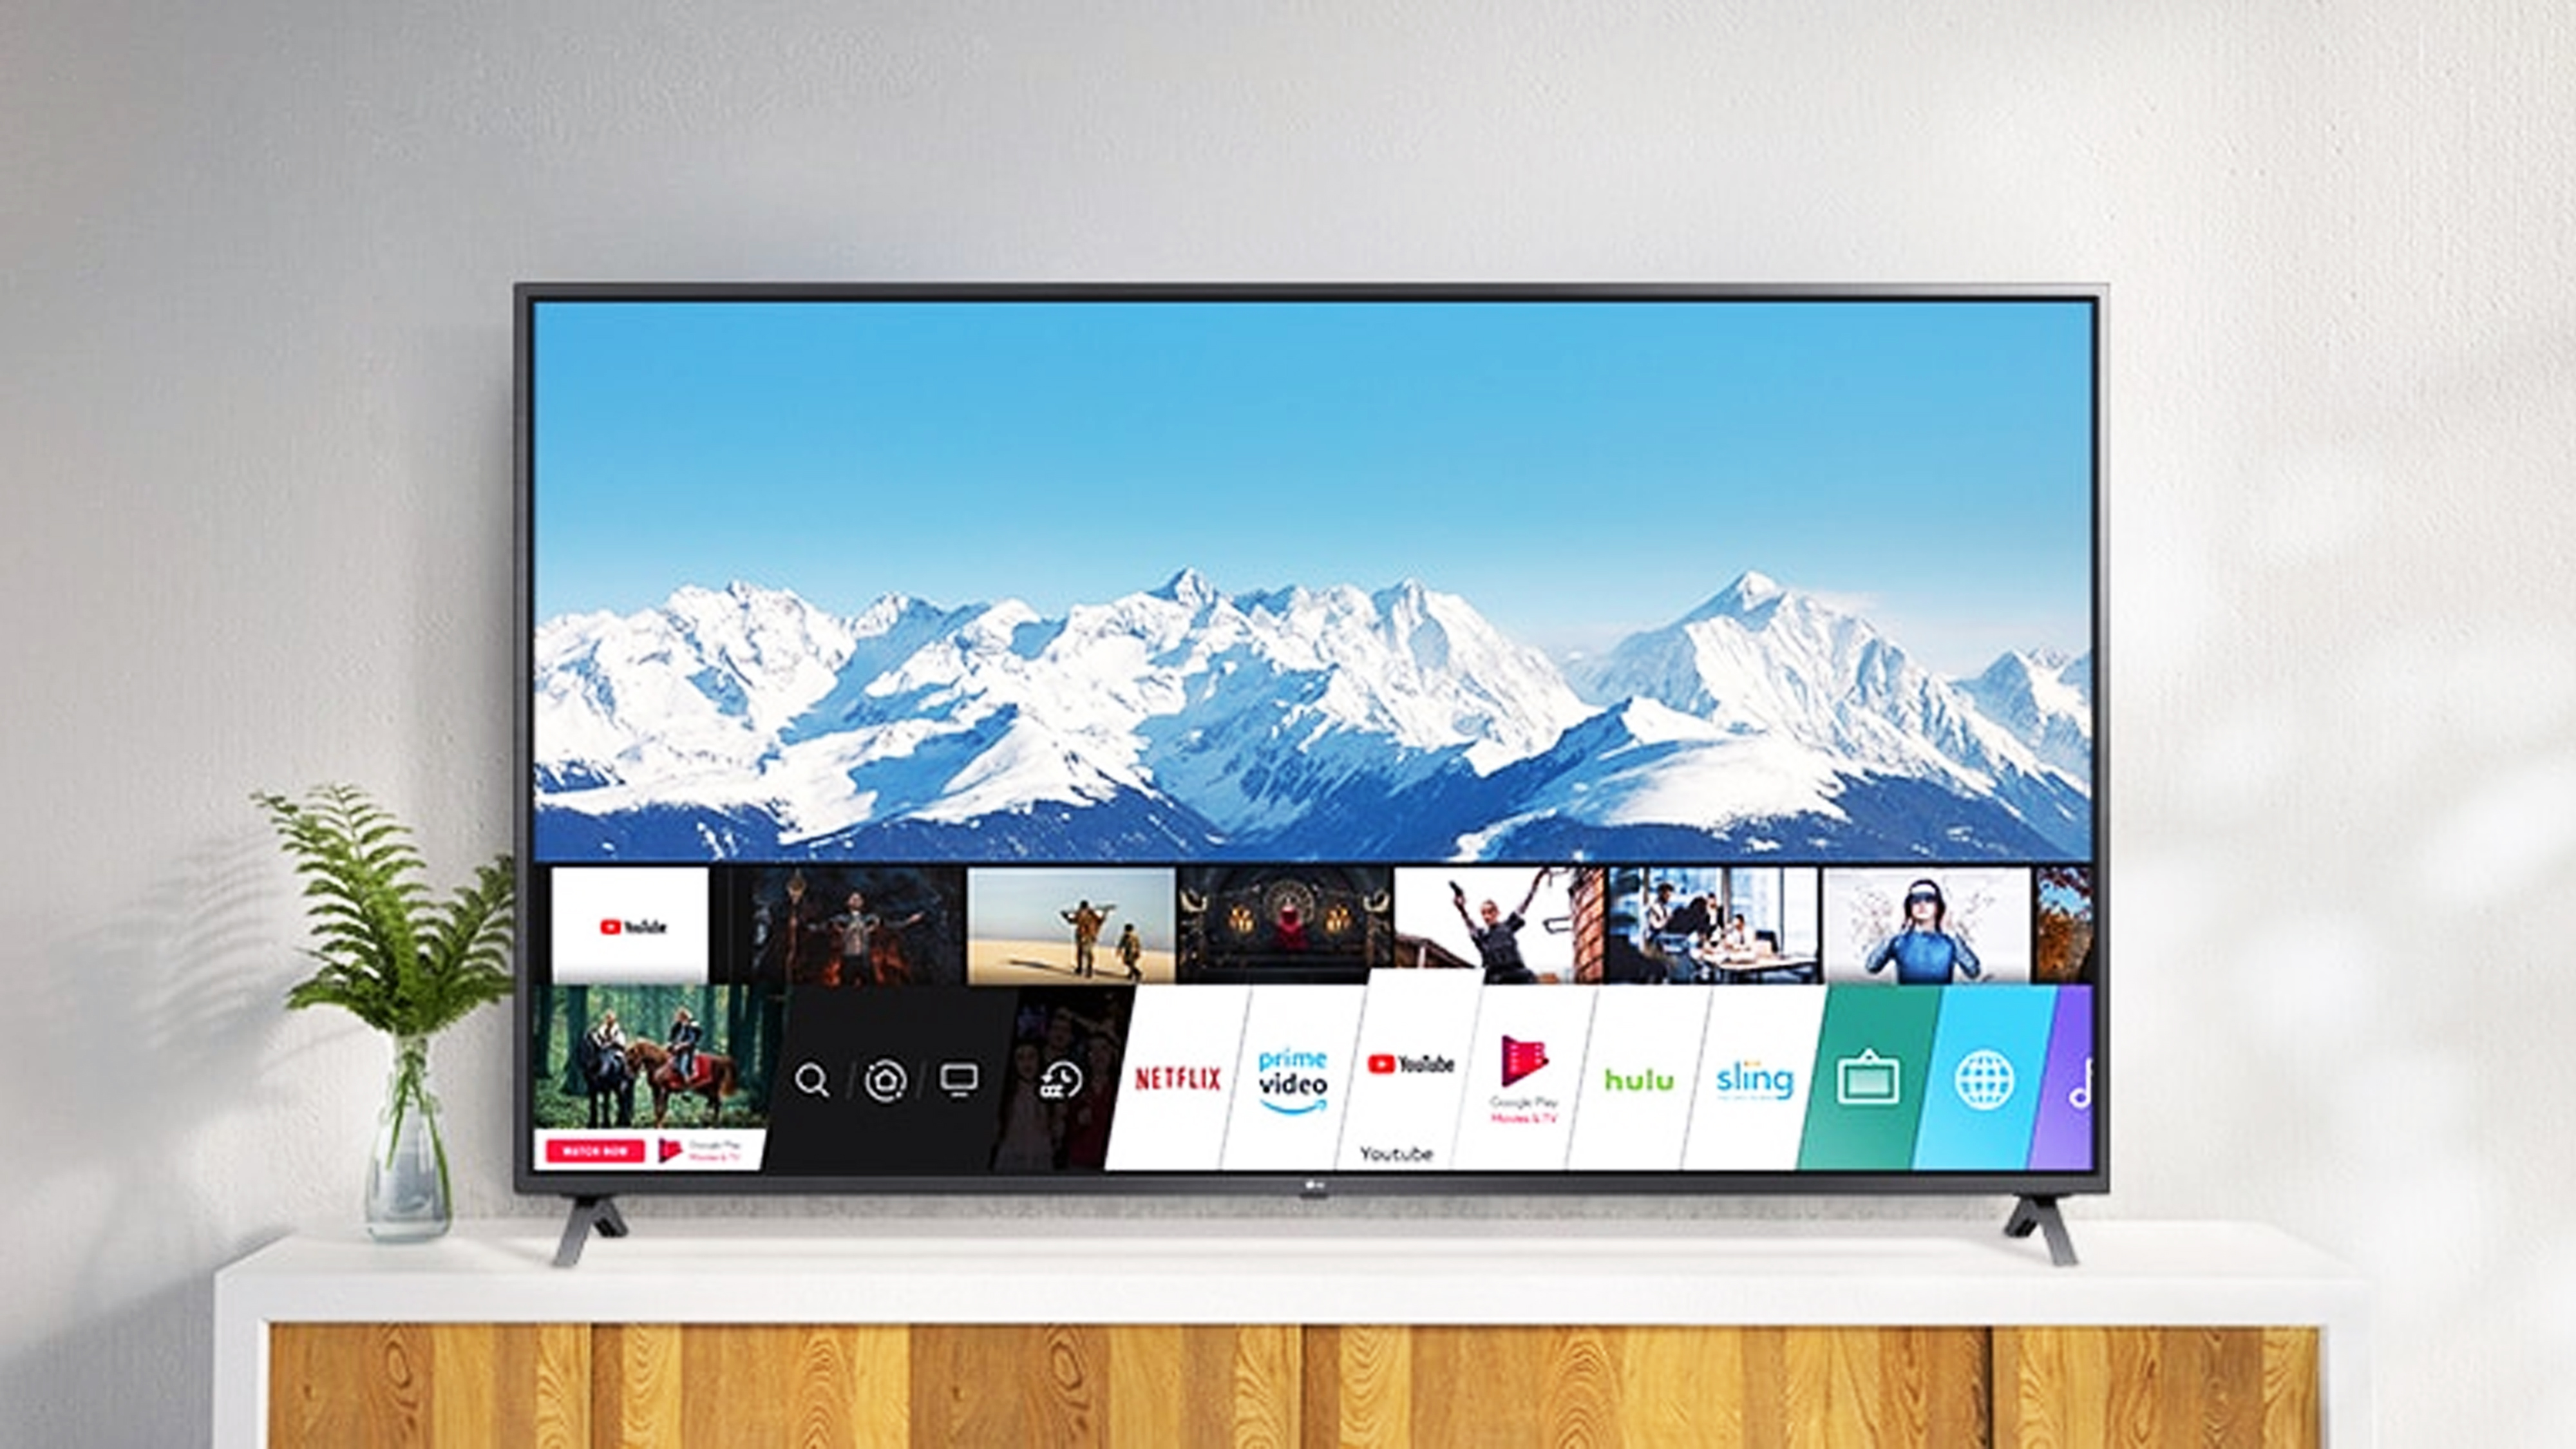 Comprar un televisor LG en 2021, ¿cuáles son los mejores modelos